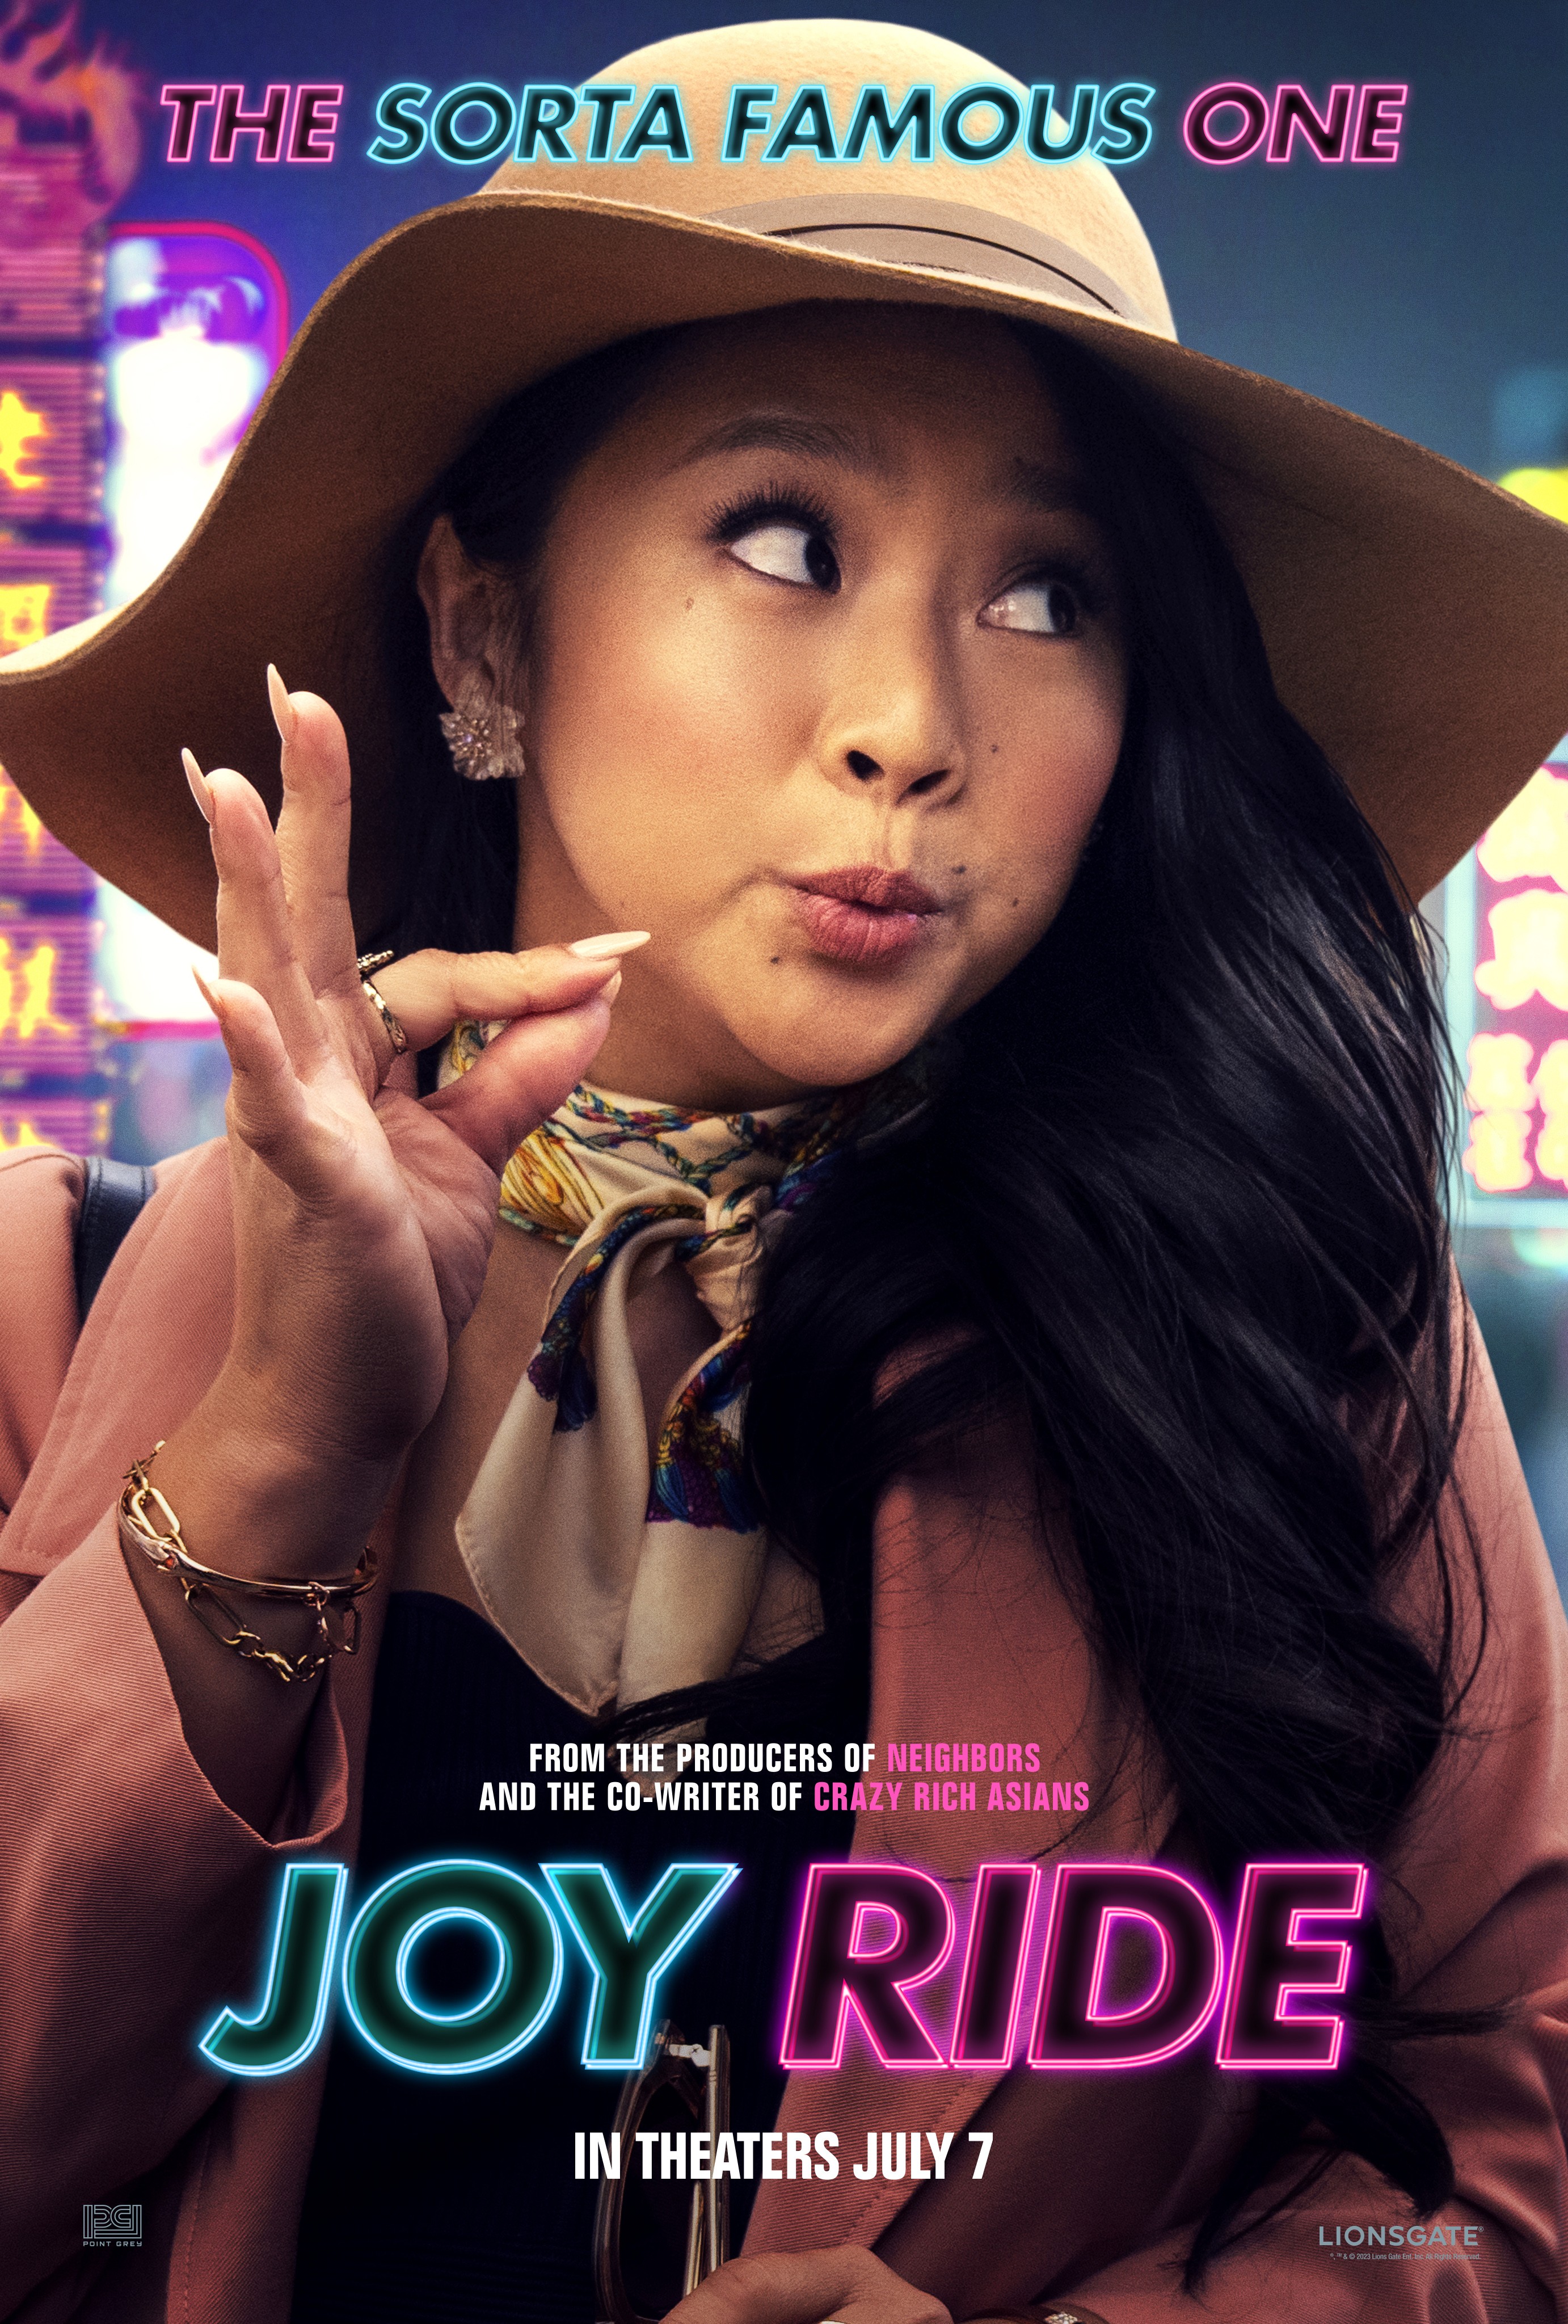 amir beirami recommends Joy Ride Movie Online